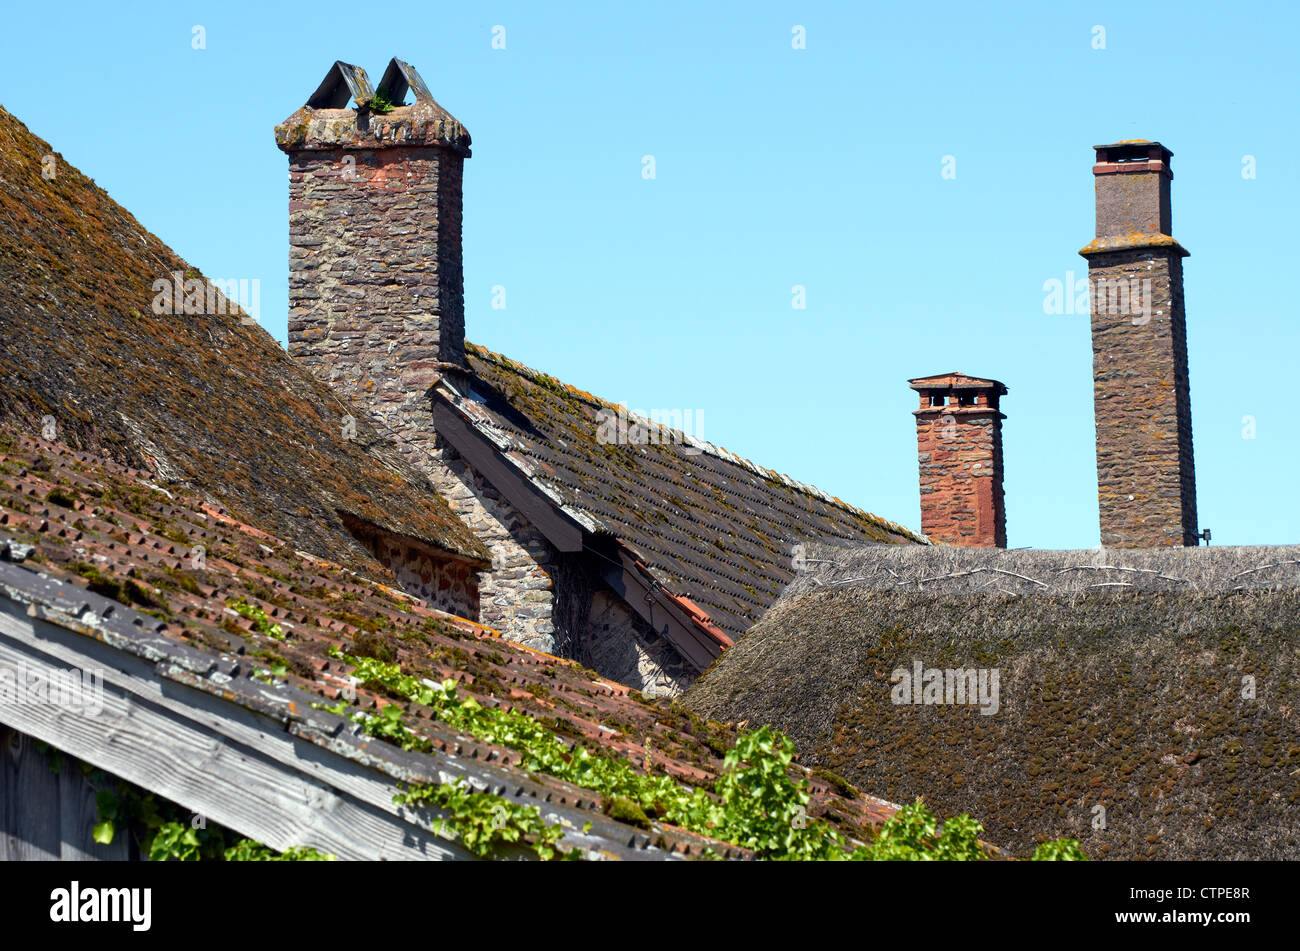 Dachdetails der West Lynch Farm, Holnicote Estate in der Nähe von Porlock, Somerset zeigt strohgedeckten Dach und 17.Jahrhundert Schornsteine, Stockfoto